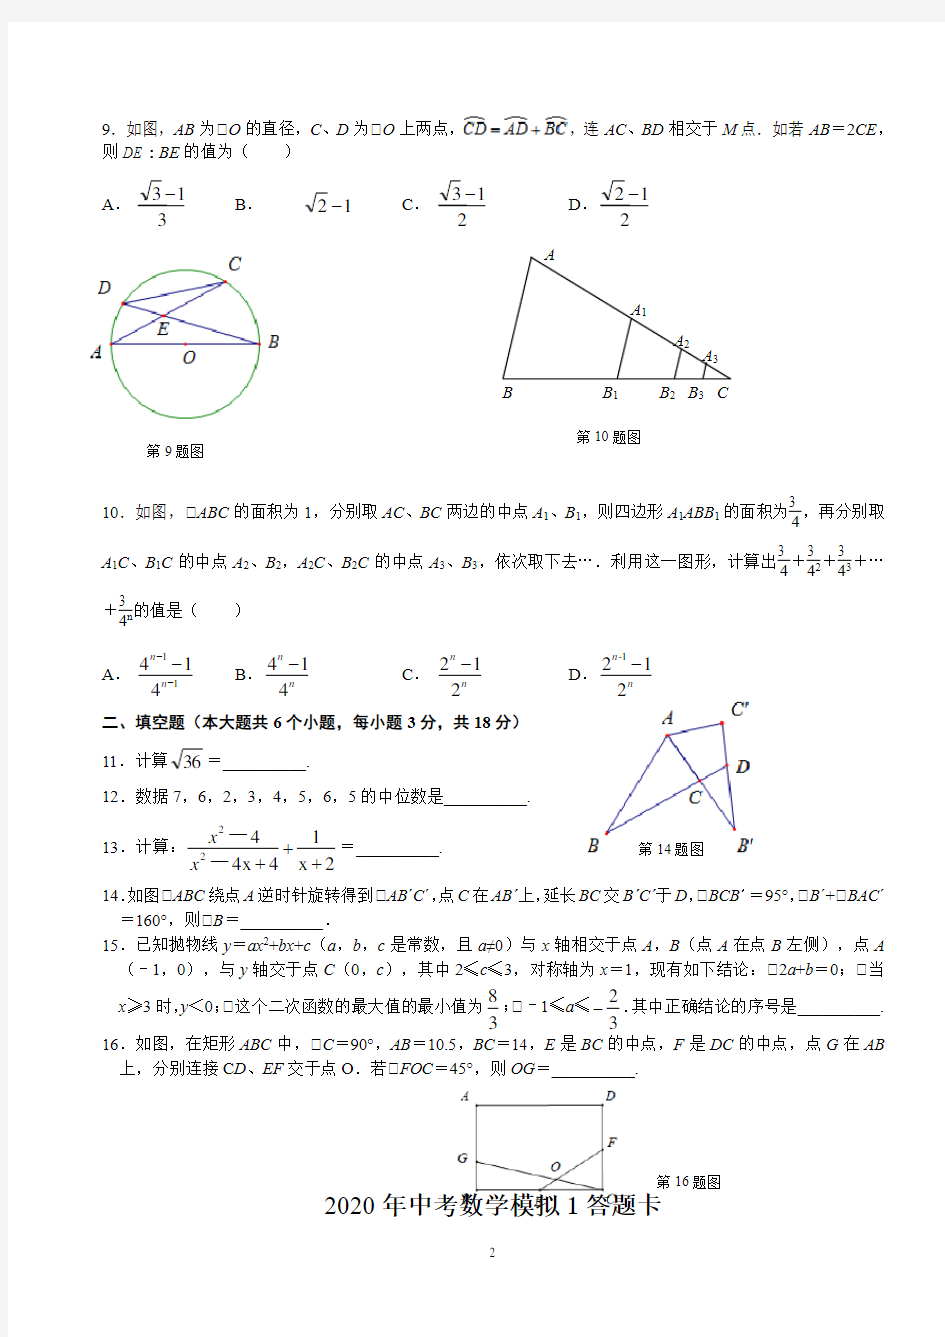 武汉一初慧泉2020年中考数学模拟试卷